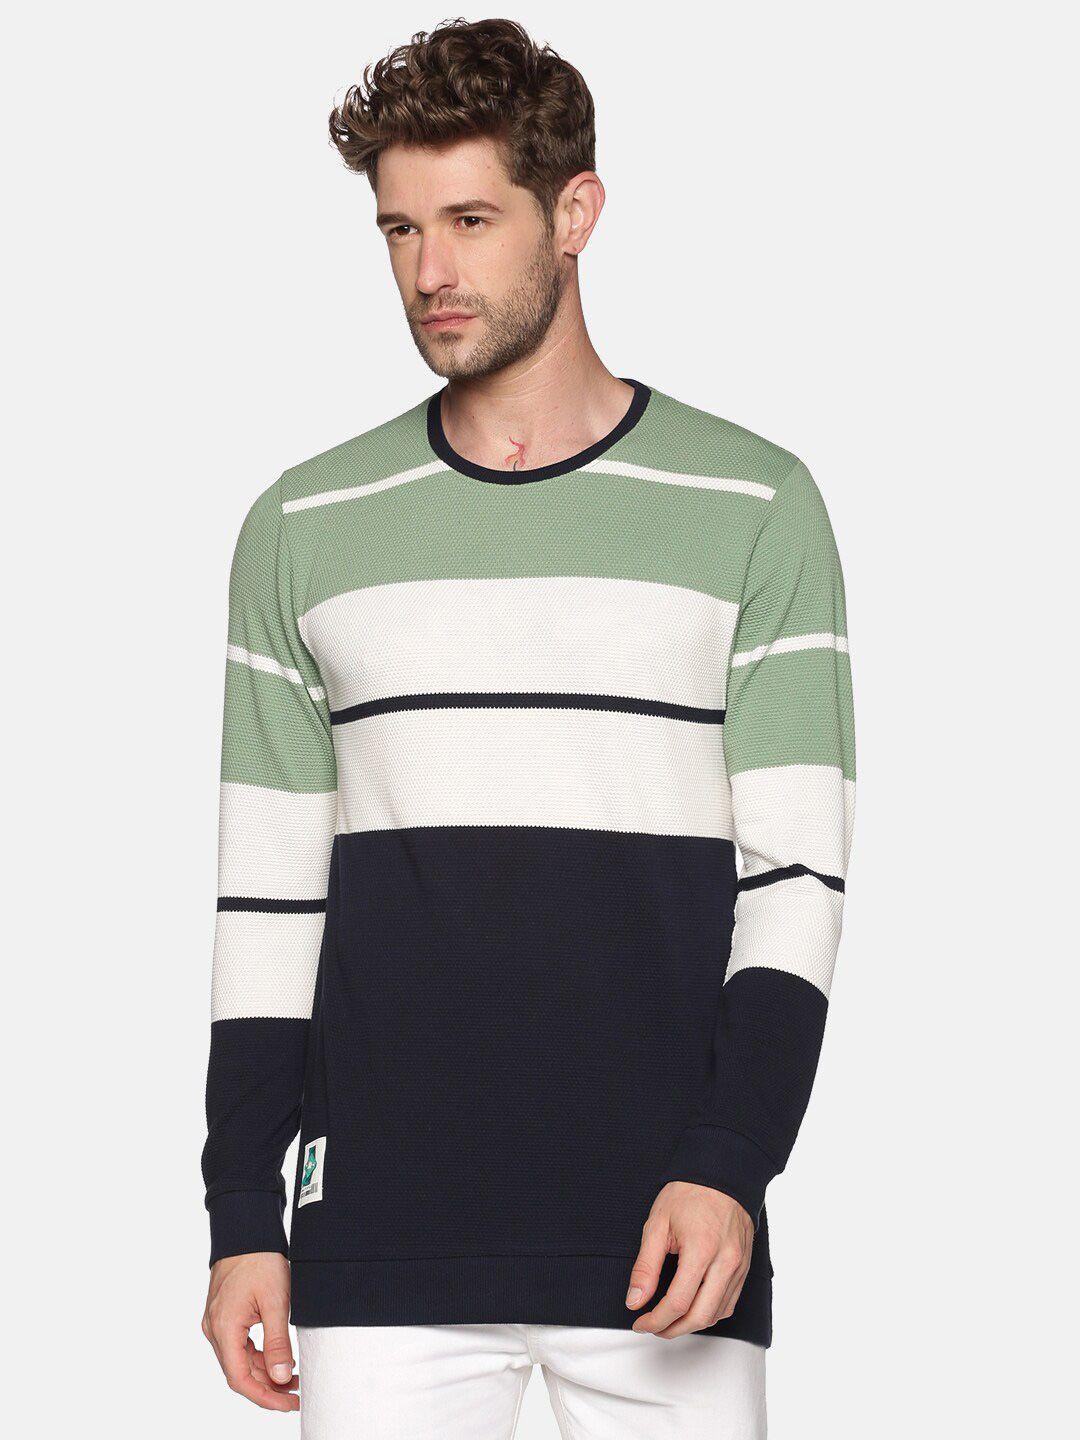 showoff men green & white striped sweatshirt